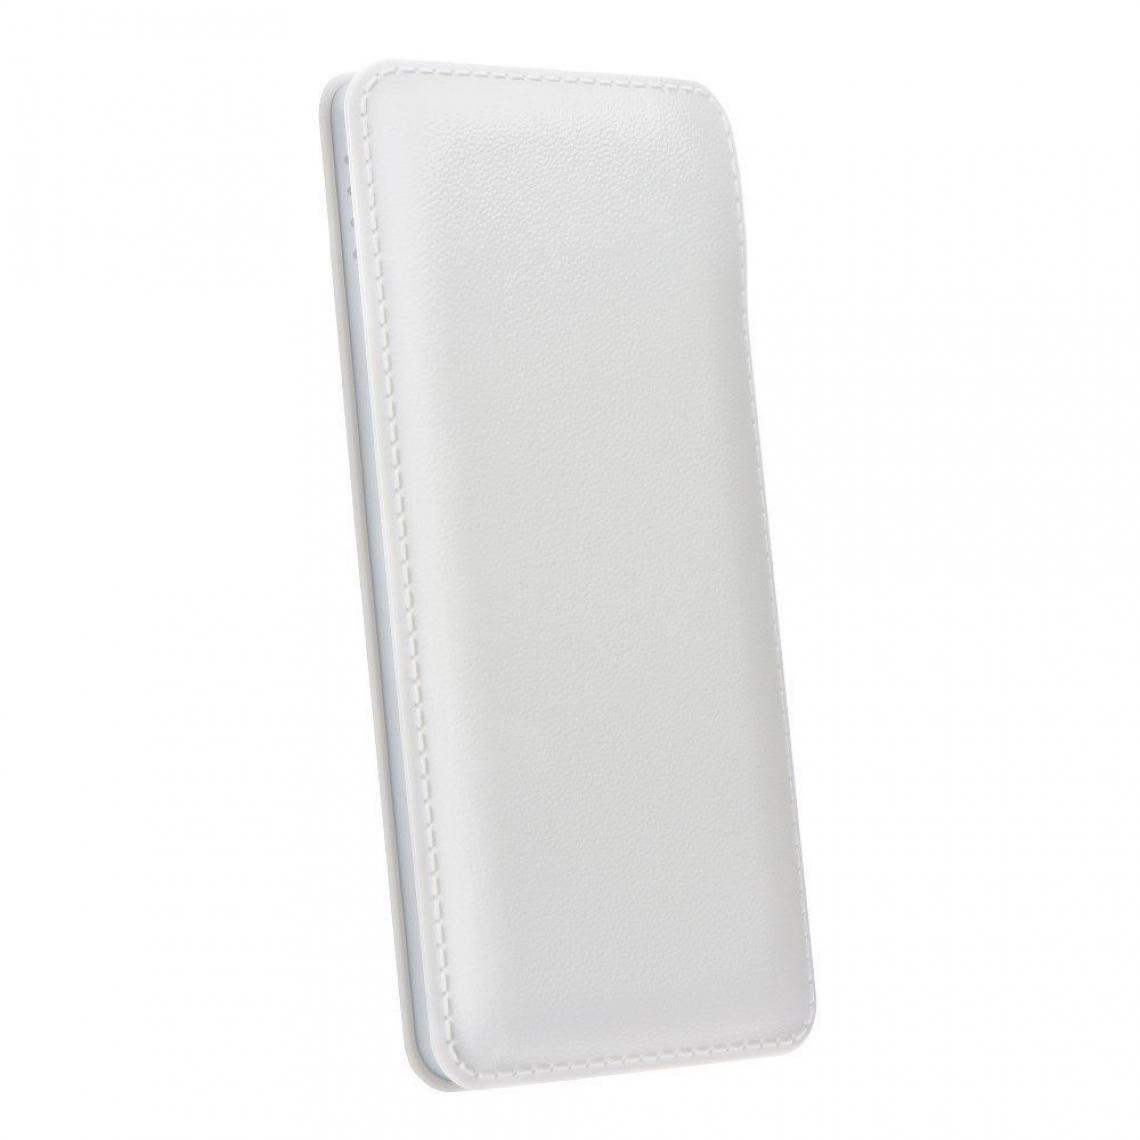 Ozzzo - Chargeur batterie externe 20000 mAh powerbank ozzzo blanc pour LG G Pad 7.0" - Autres accessoires smartphone